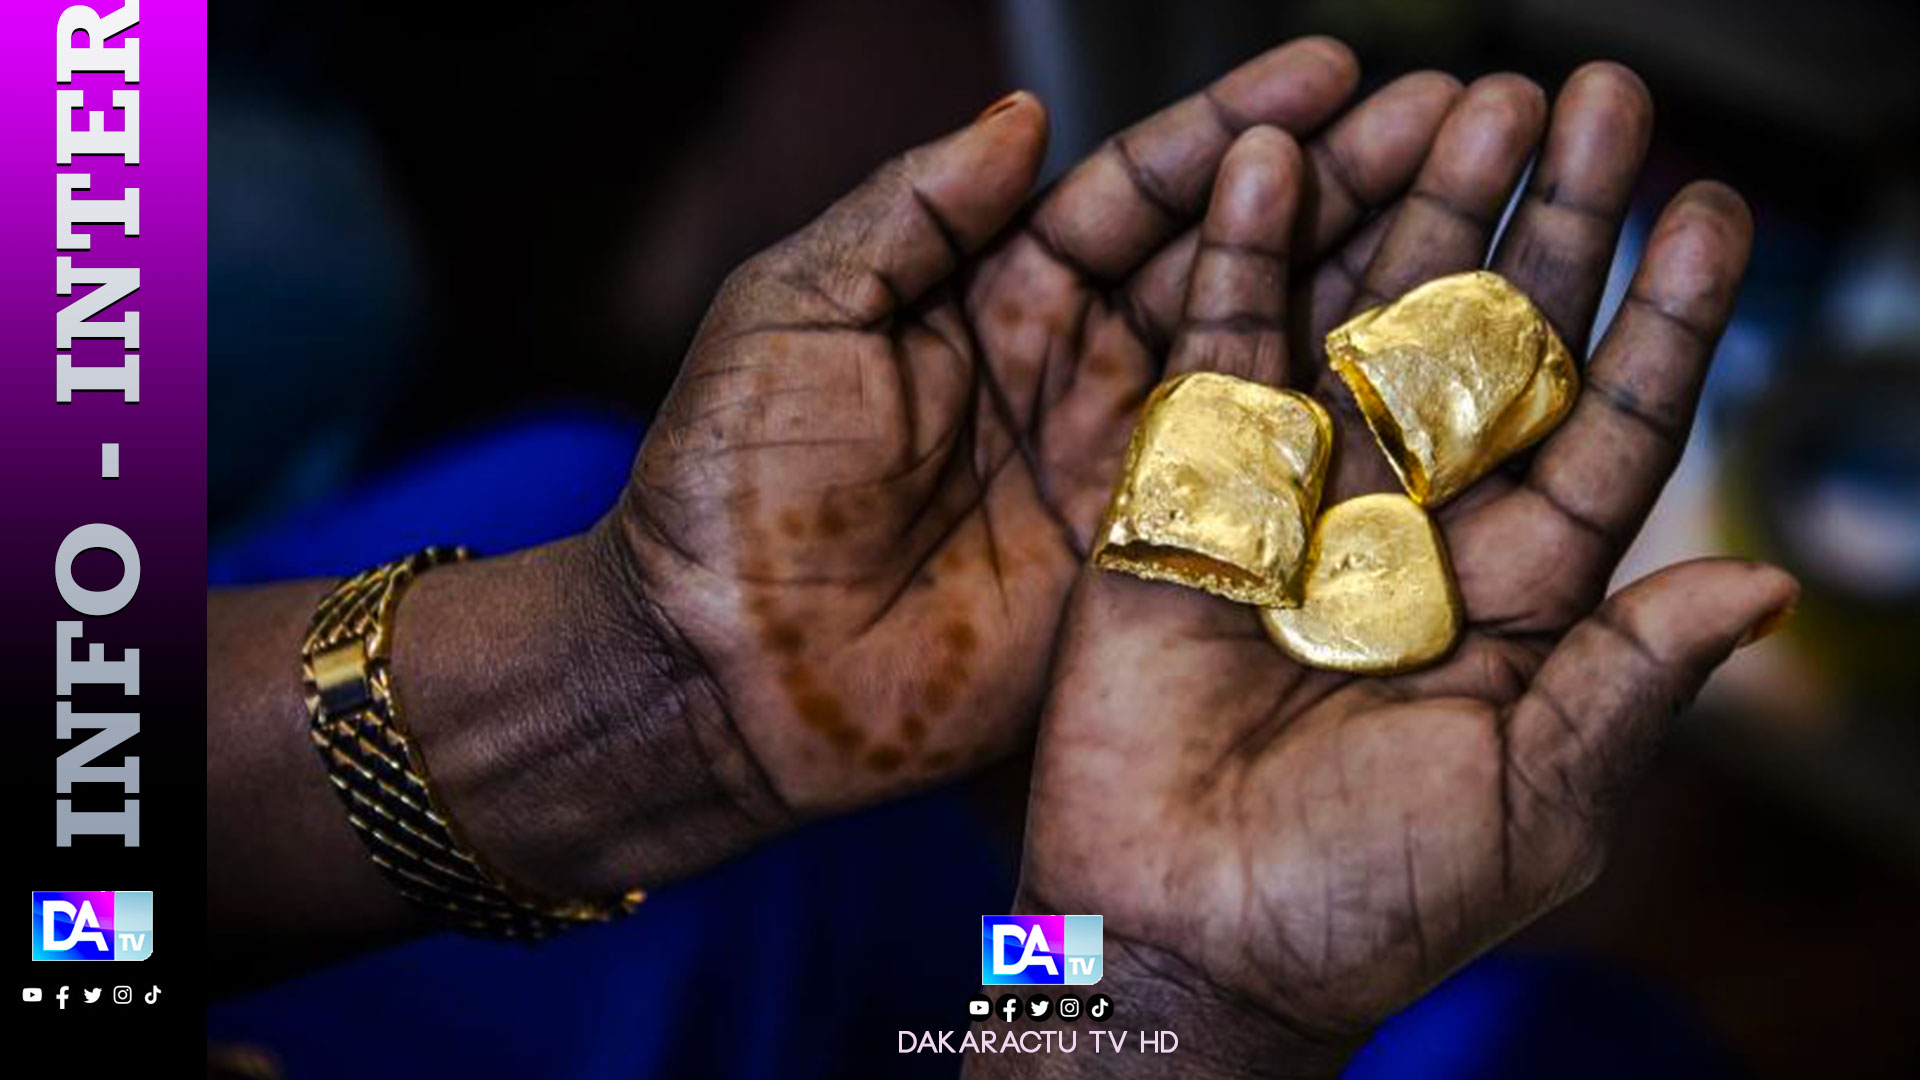 La contrebande d'or africain "prend de l'ampleur" selon une ONG suisse